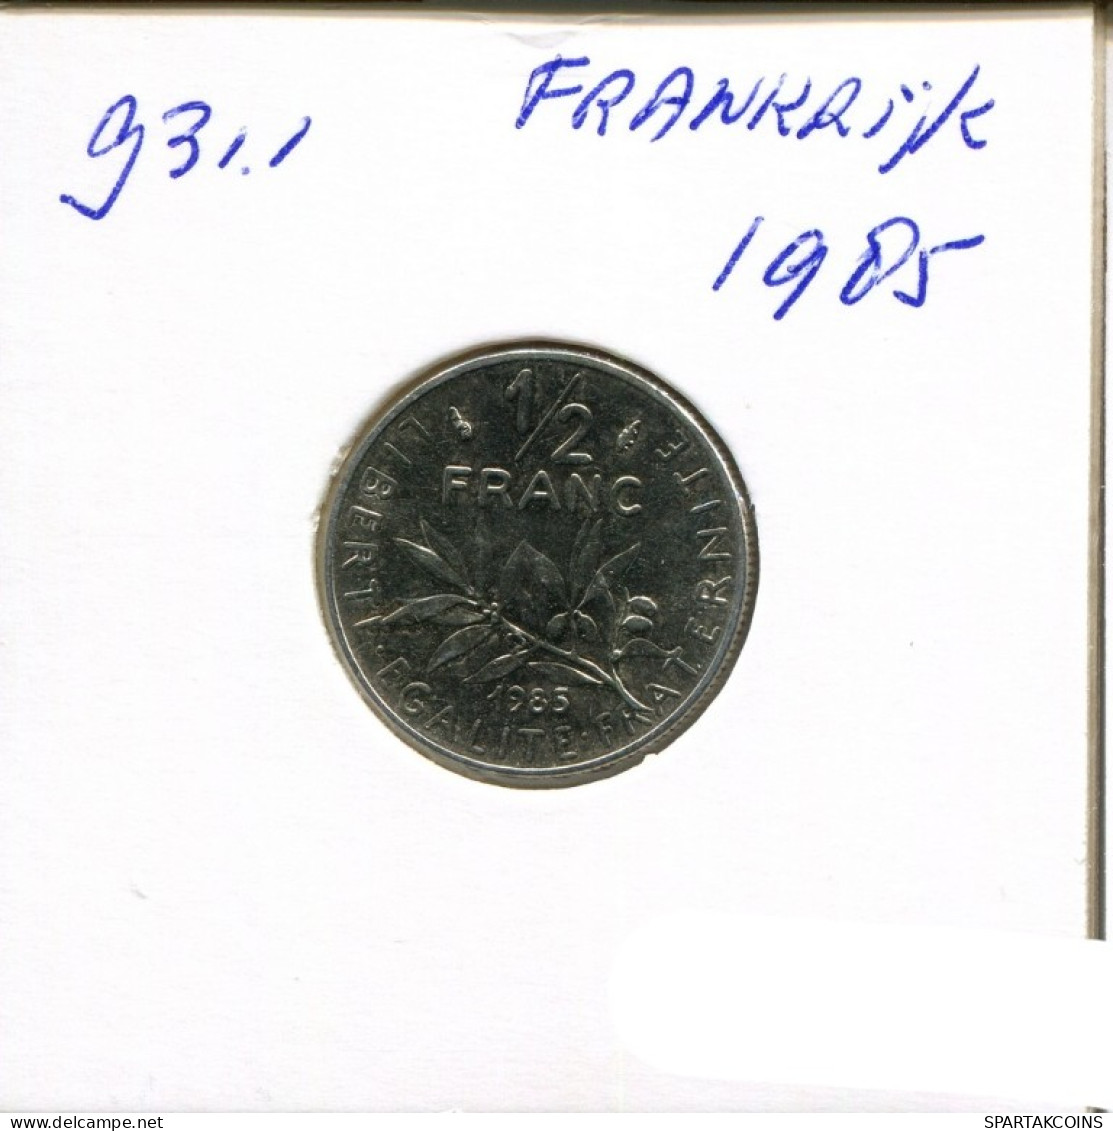 1/2 FRANC 1985 FRANKREICH FRANCE Französisch Münze #AN248.D.A - 1/2 Franc